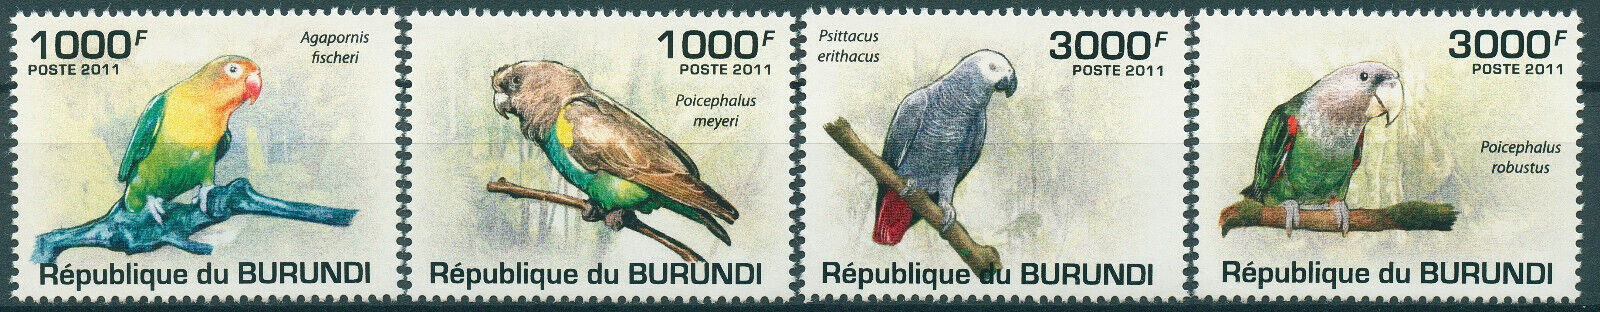 Burundi 2011 MNH Birds on Stamps Parrots African Grey Parrot Lovebirds 4v Set